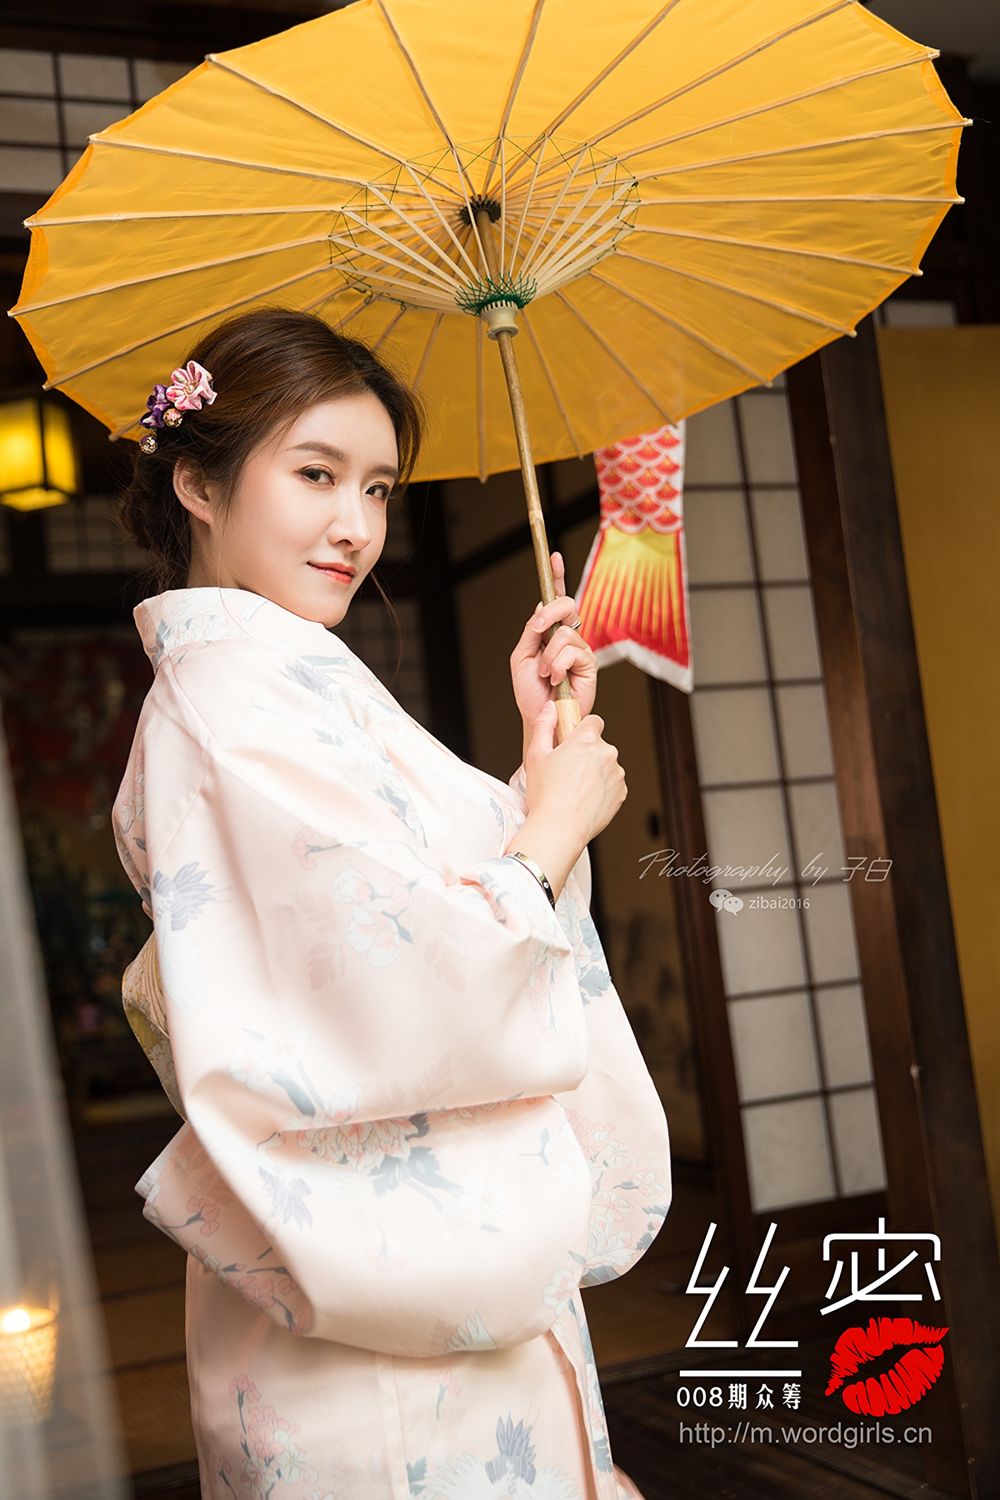 TouTiao Girls Missleg Kimono Flowers and Snakes